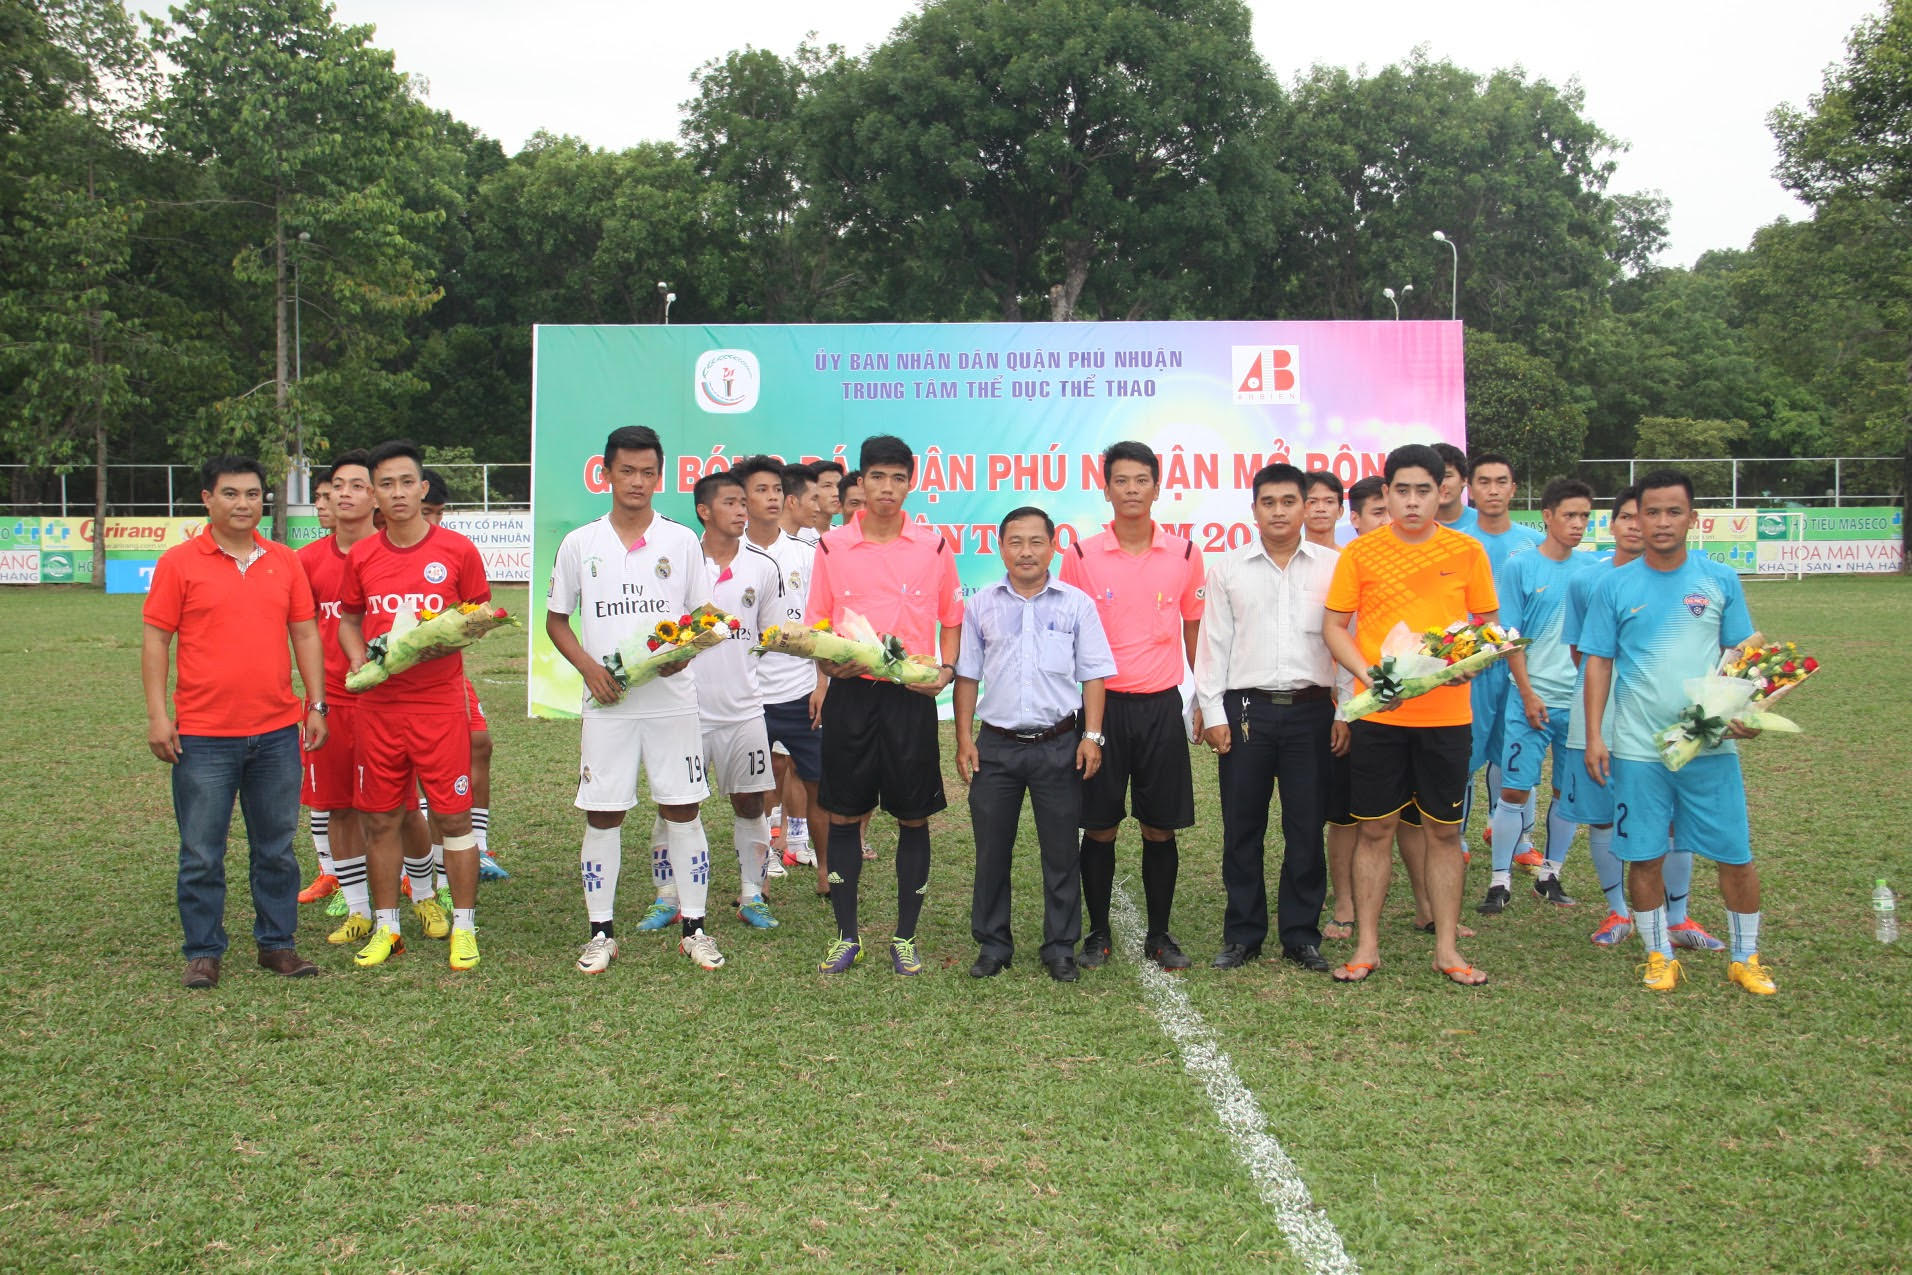 Chung kết giải bóng đá quận Phú Nhuận mở rộng cúp An Biên TOTO năm 2015